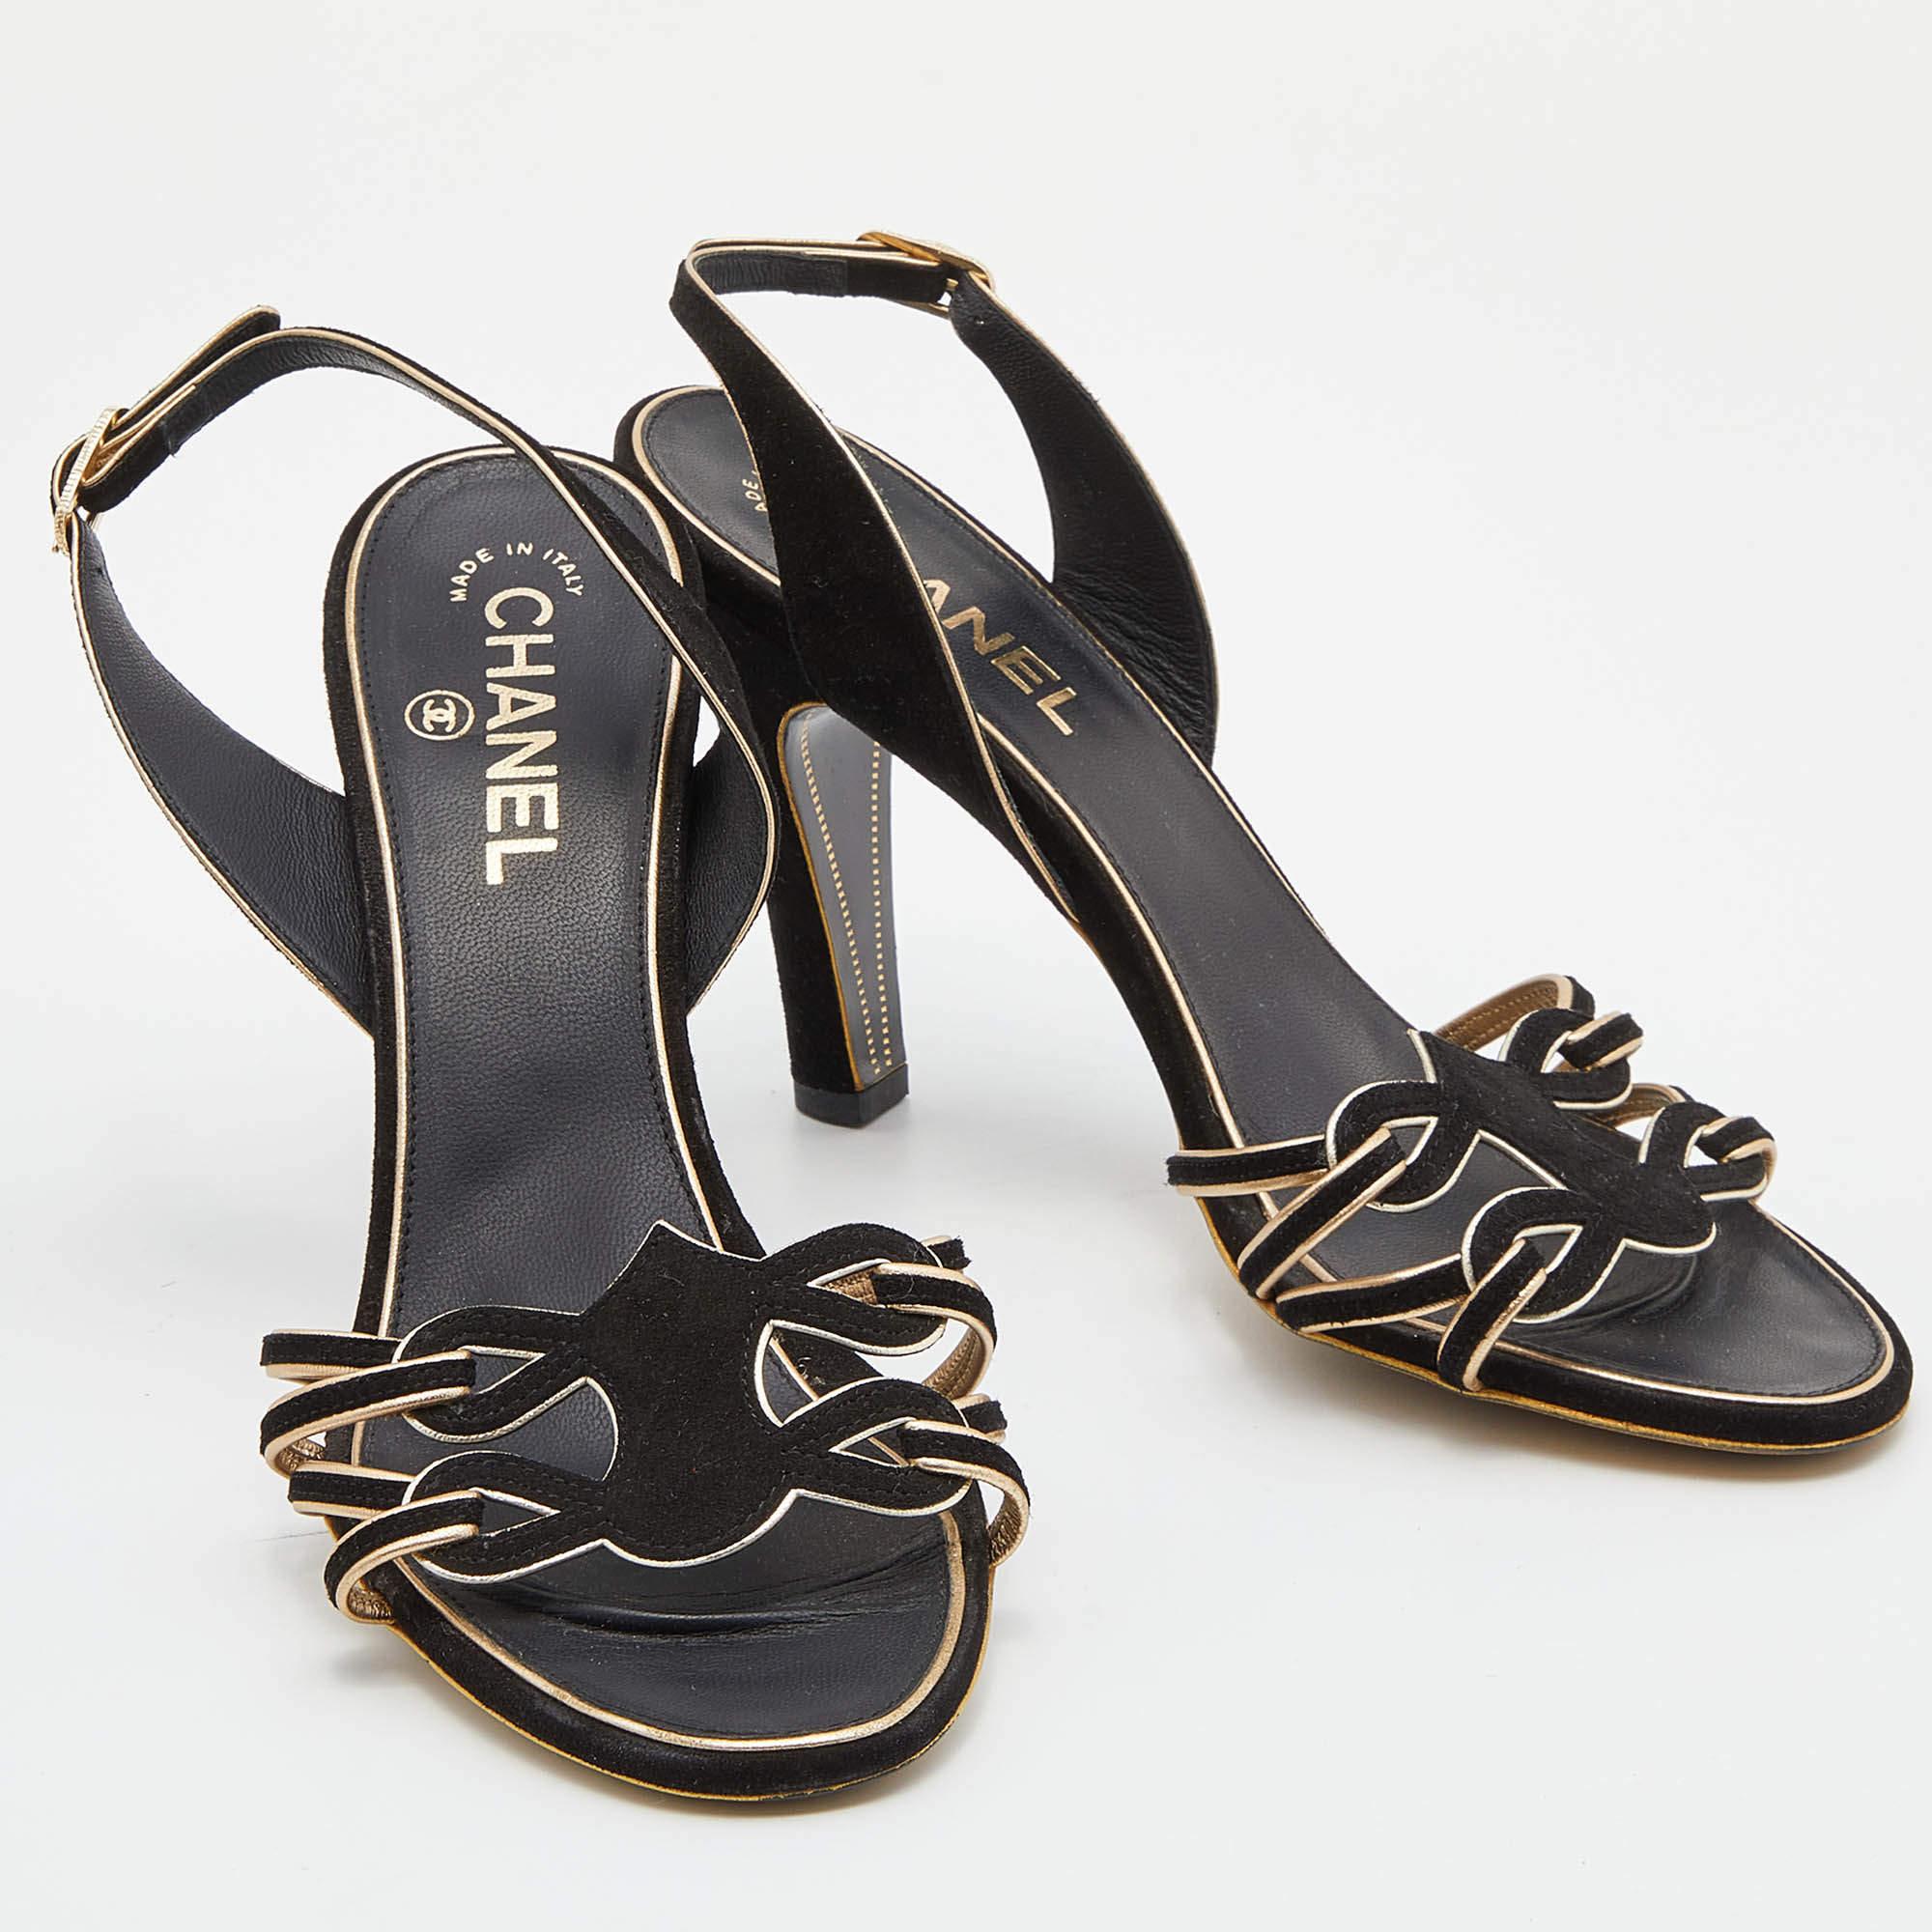 Chanel Black Suede Cut Out CC Slingback Sandals Size 39 1